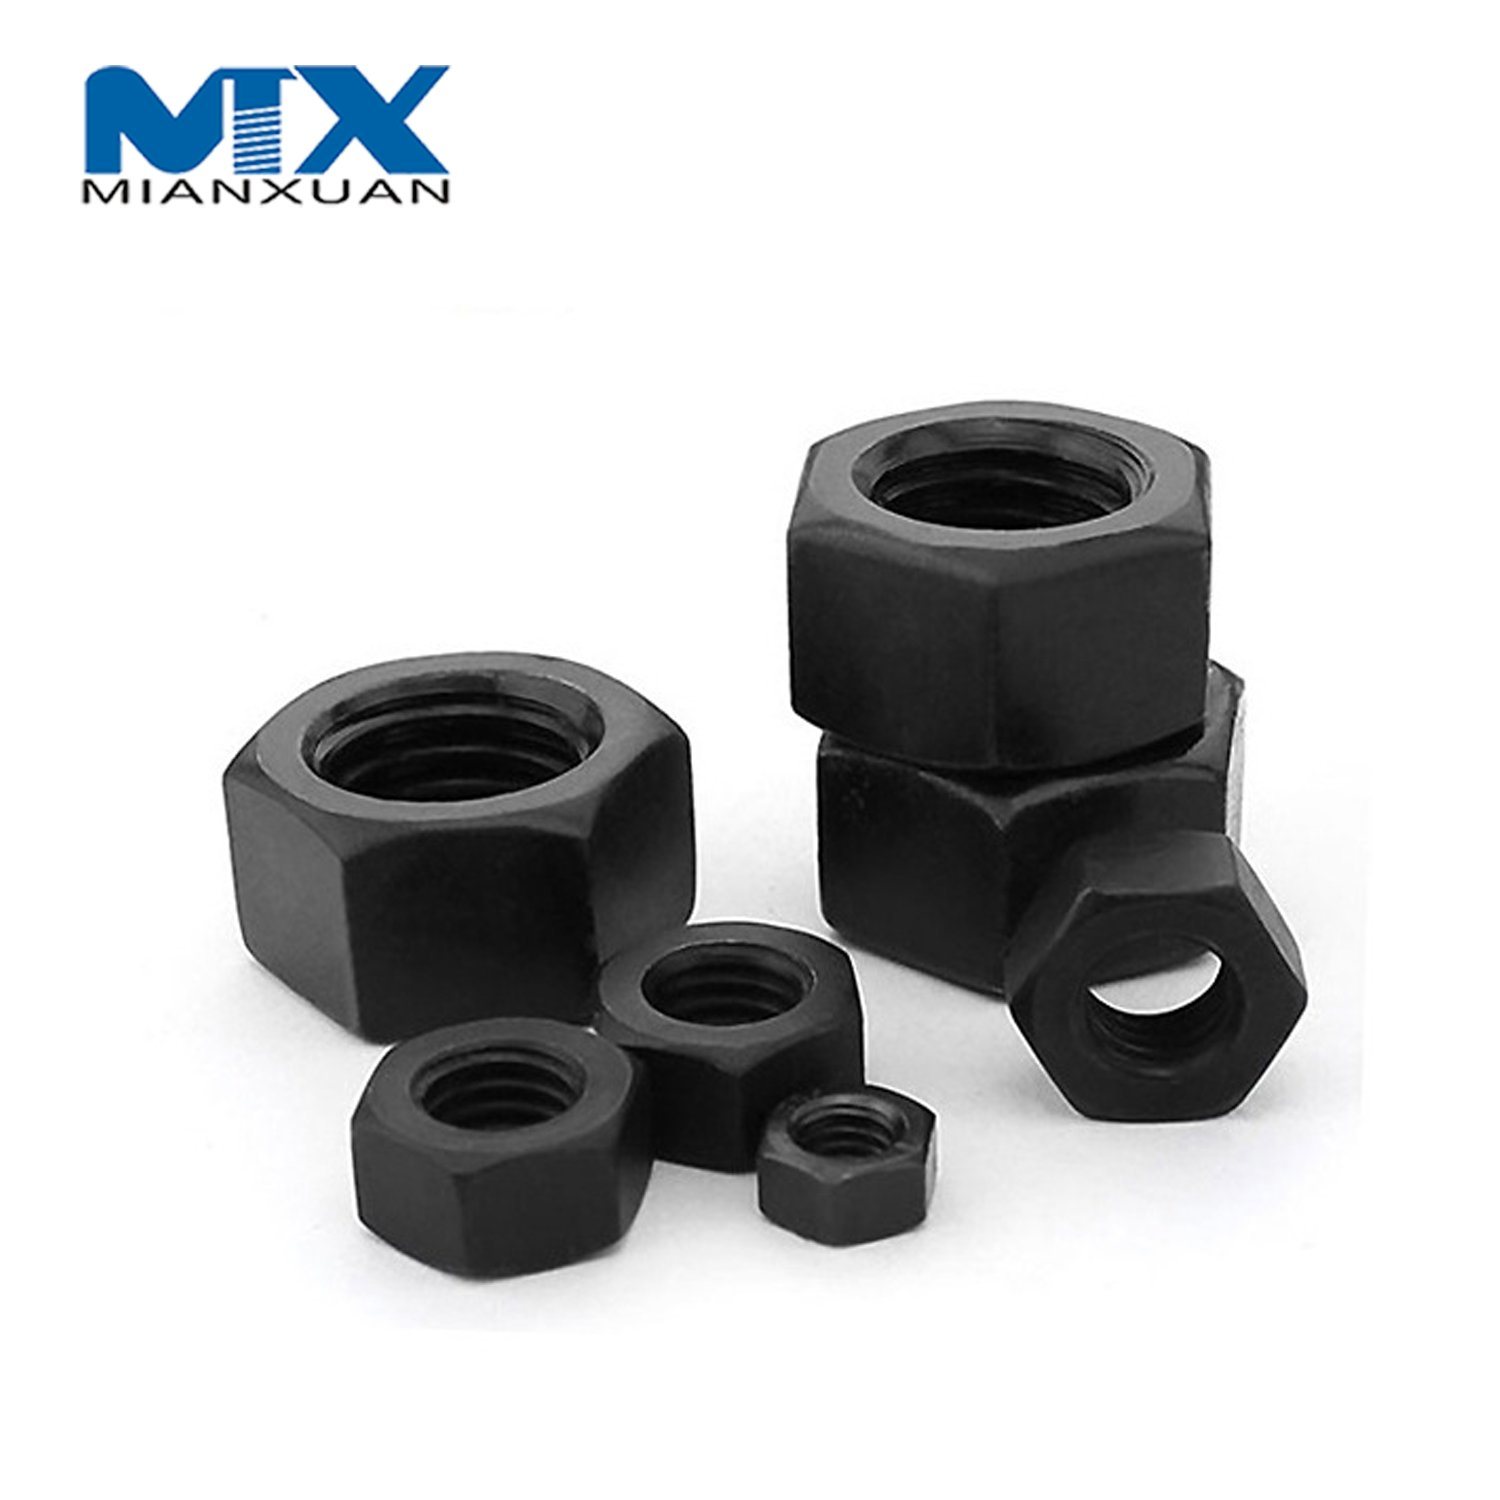 934 Hex Nut Carbon Steel Standard Manufacturer Black Zinc DIN934